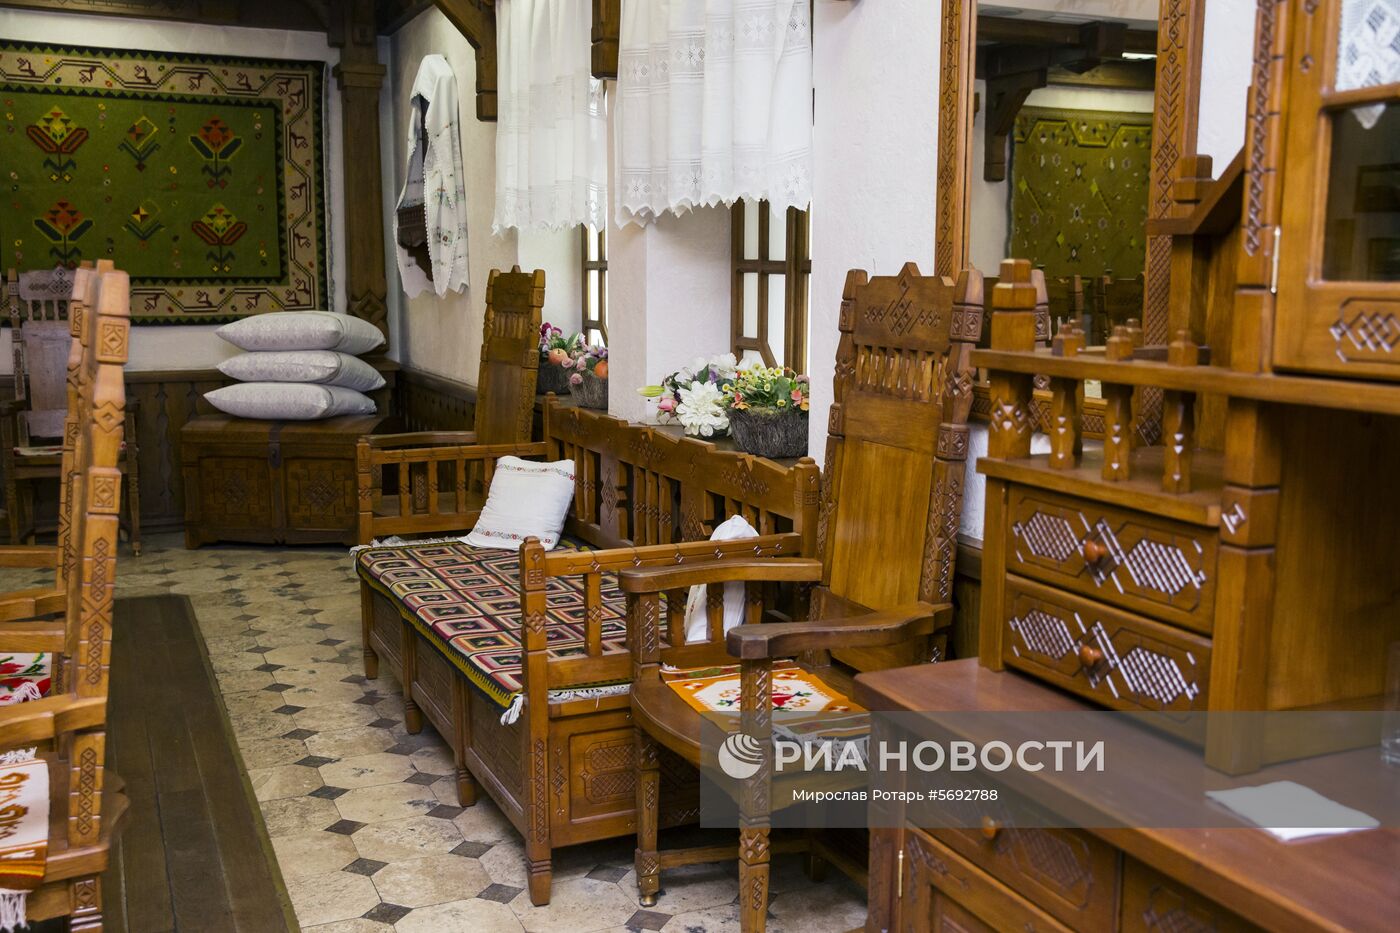 Криковские винные подвалы в Молдавии 